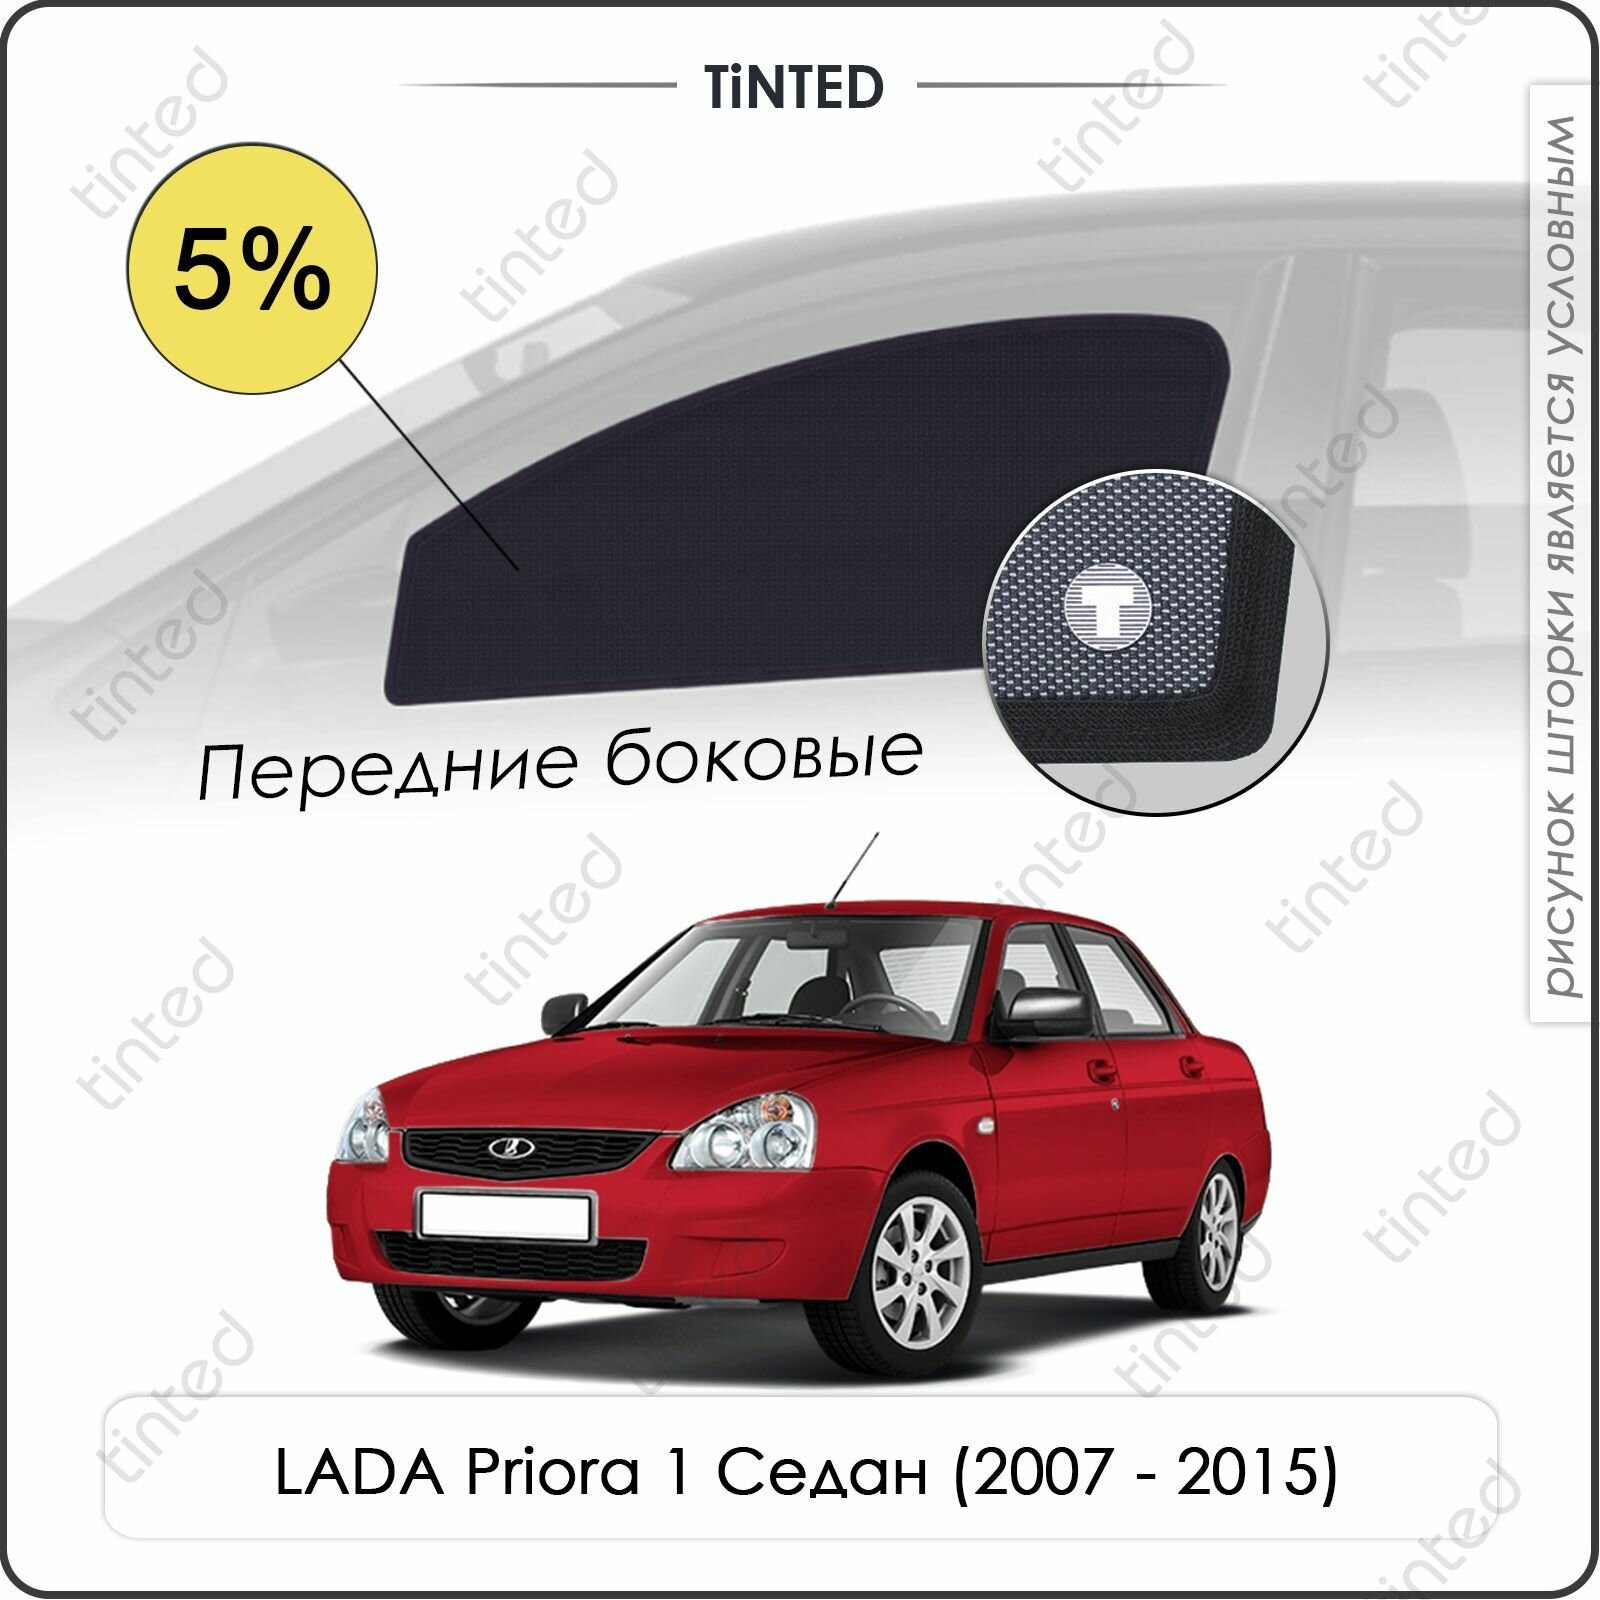 Шторки на автомобиль солнцезащитные LADA Priora 1 Седан 4дв. (2007 - 2015) на задние двери 5% сетки от солнца в машину лада приора Каркасные автошторки Premium